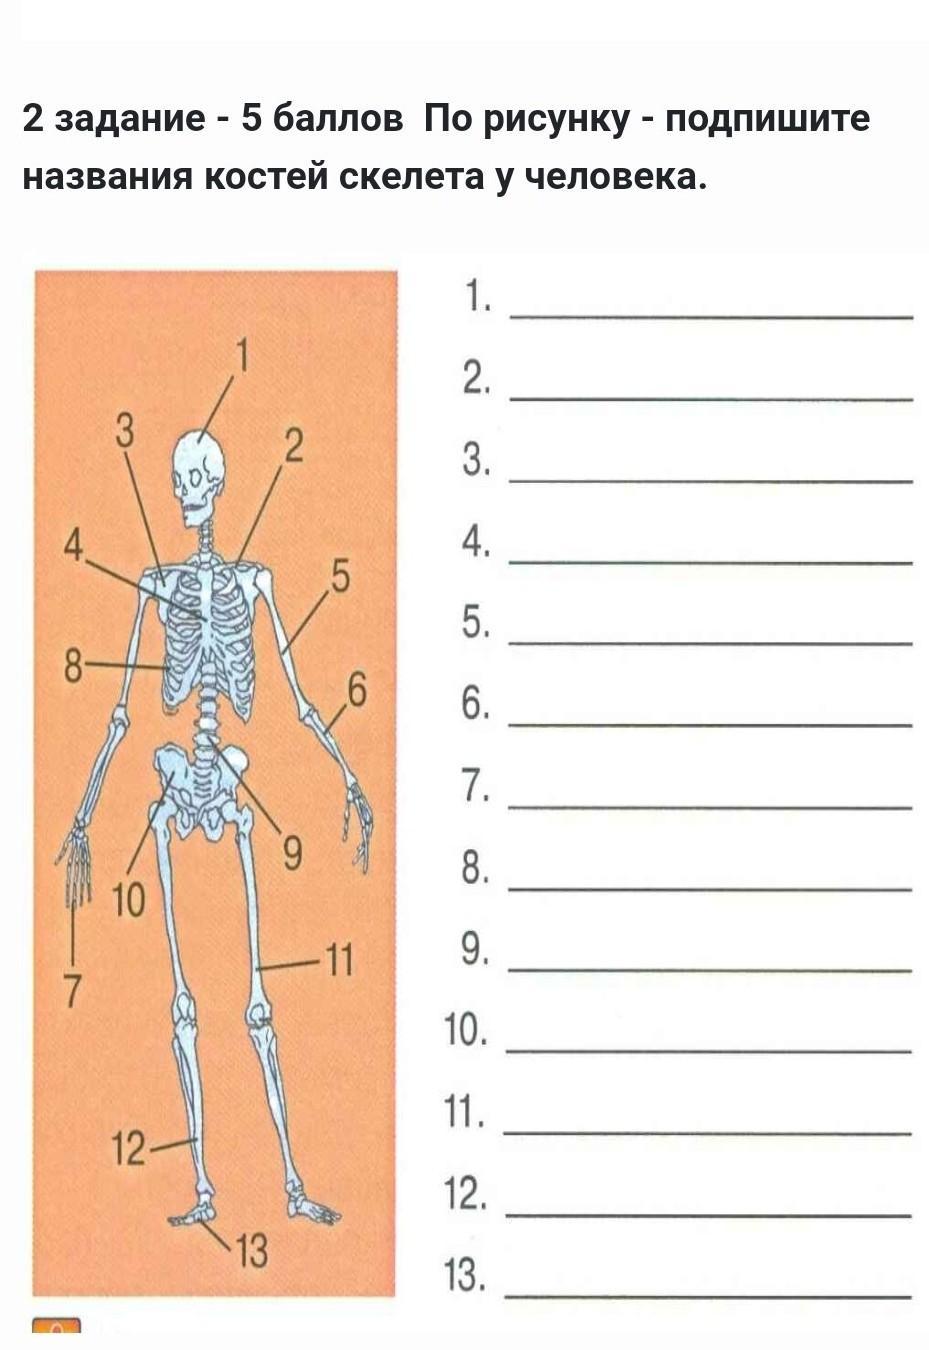 Подпишите название костей скелета. Подпишите названия костей. Скелет человека с подписанными названиями. По рисунку Подпиши названия костей у человека.